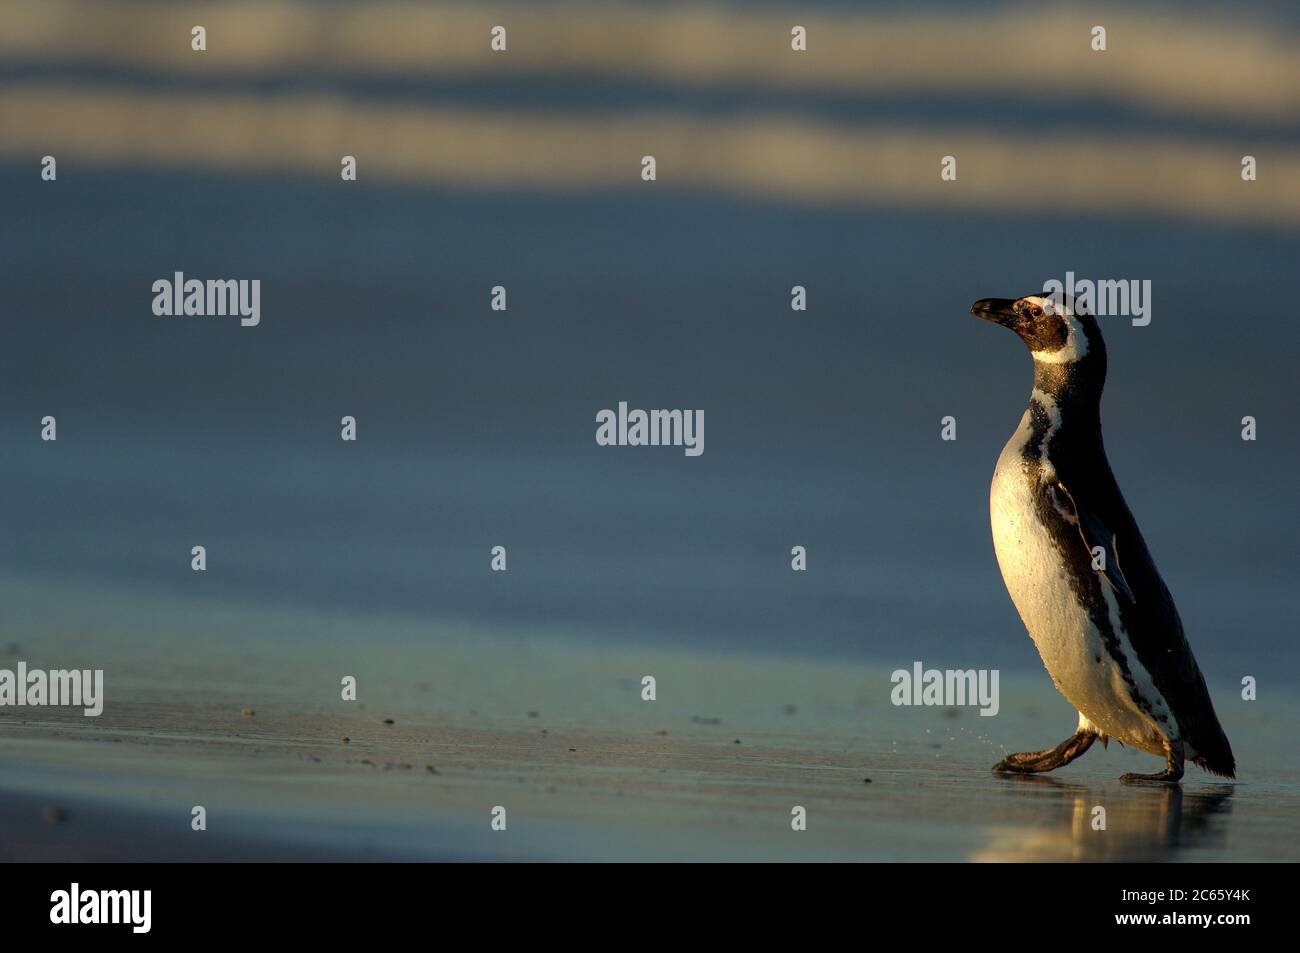 Con un tamaño de cuerpo de aprox. 73 cm el pingüino magallánico (Spheniscus magellanicus) pertenece a la especie de pingüino de tamaño medio. Las dos bandas pectorales negras son características y ayudan a distinguirla del pingüino Humboldt muy similar, que tiene una sola banda. Foto de stock